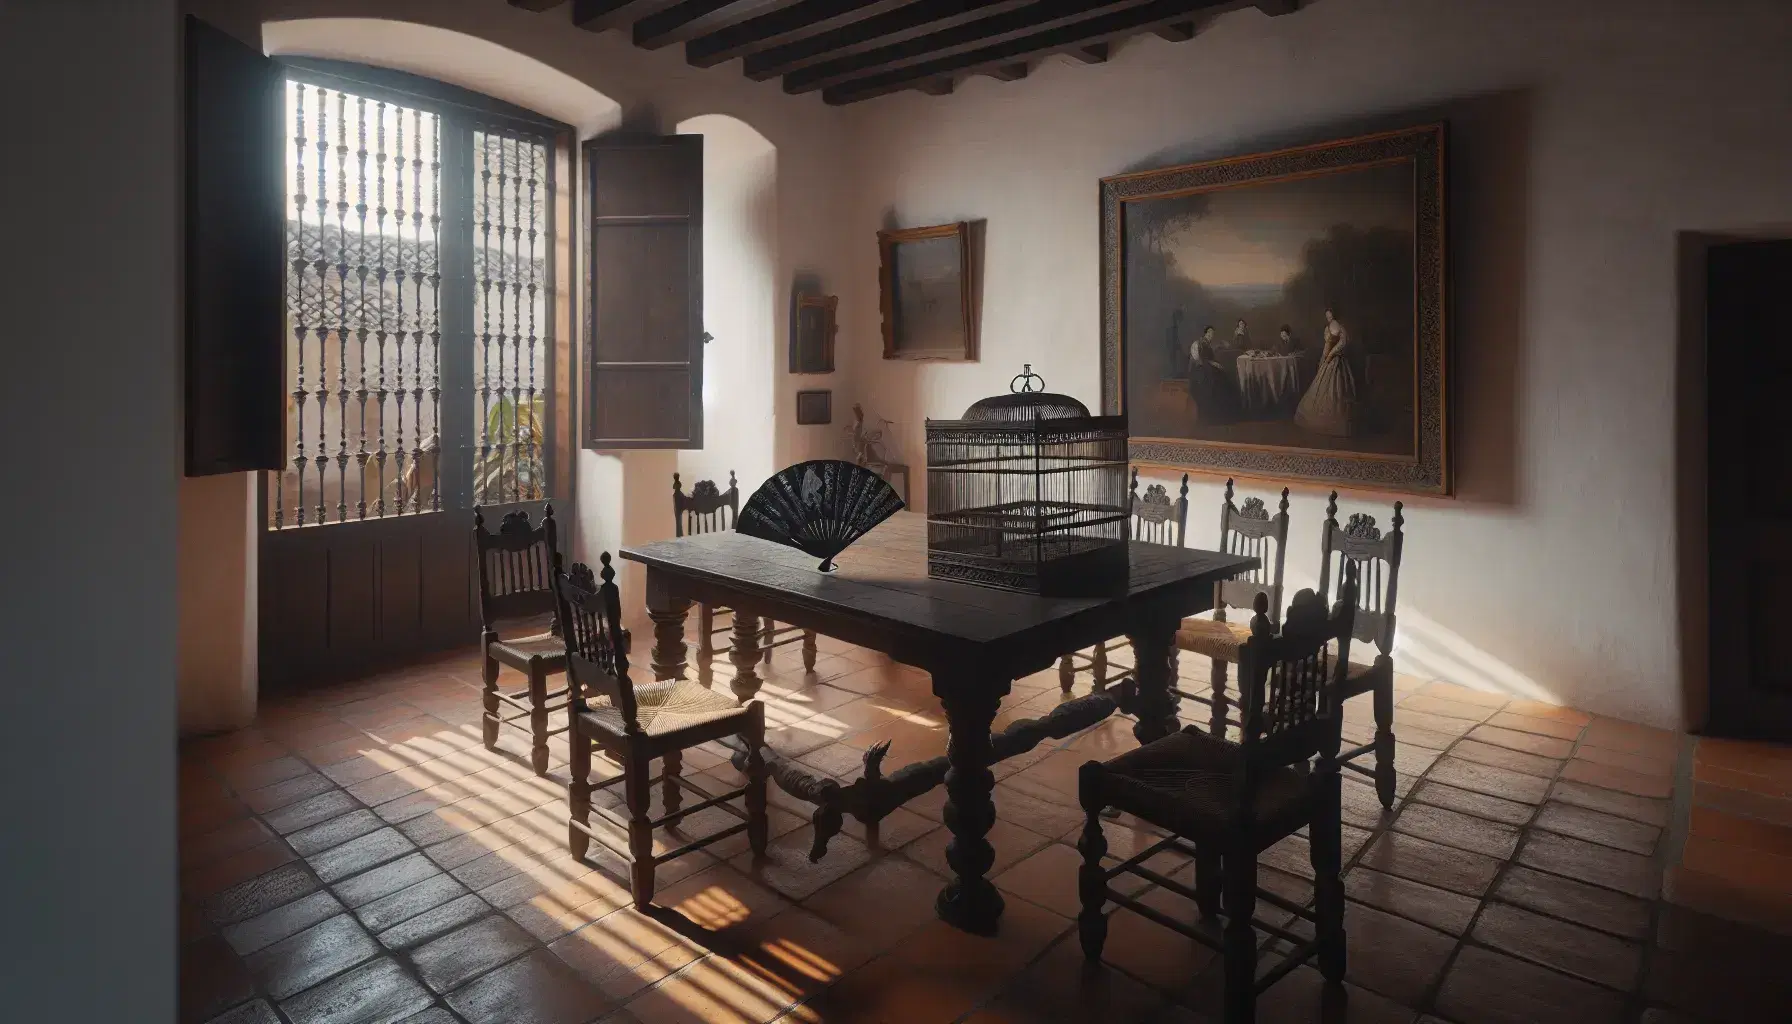 Escena en habitación al estilo español antiguo con mesa de madera, sillas de mimbre, jaula con pájaro gris y cuadro rural en pared iluminada por luz natural.